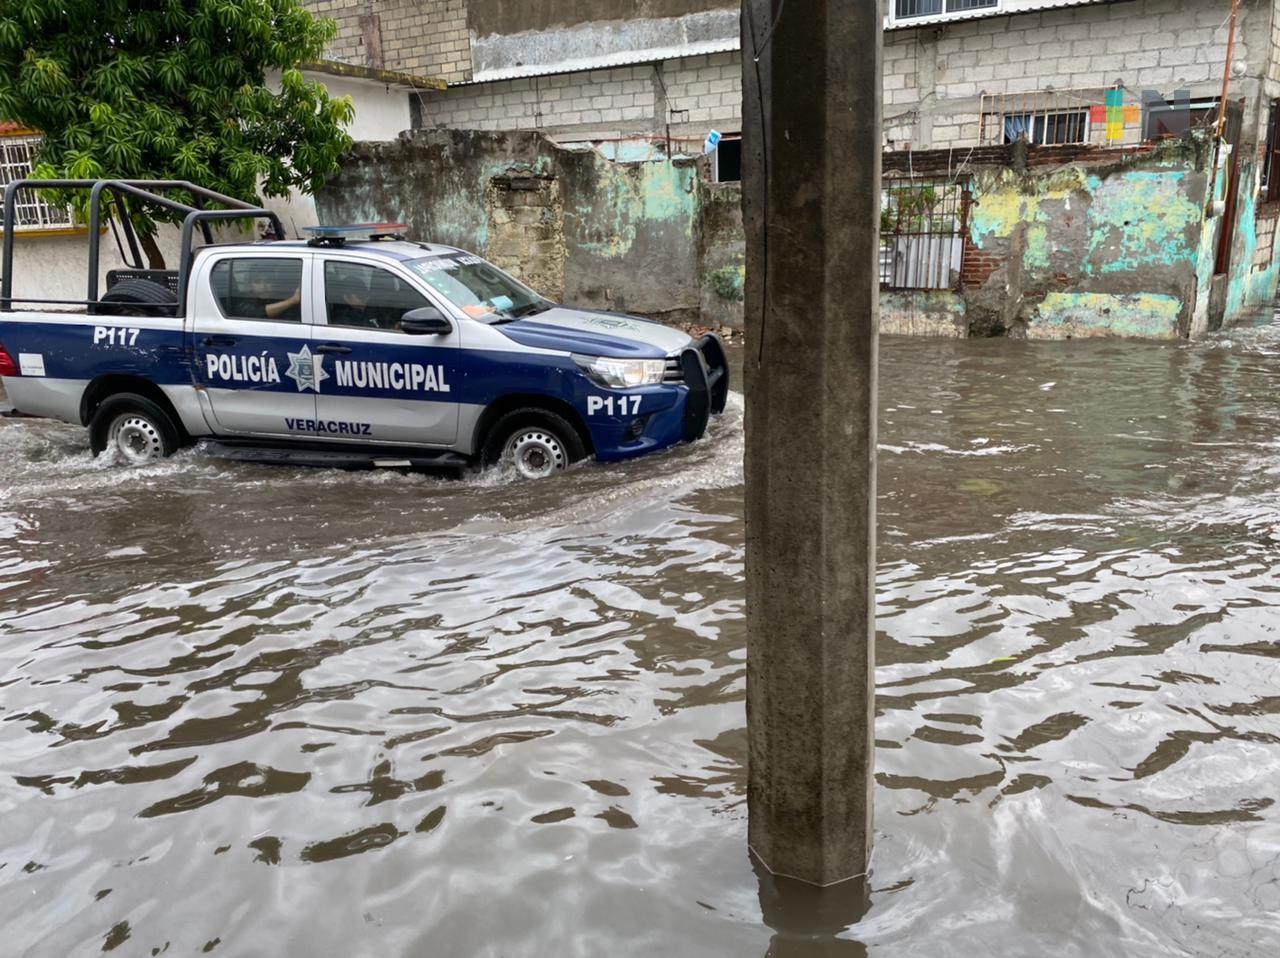 Fallece una persona en Colonia Hidalgo, estaba flotando en calle inundada